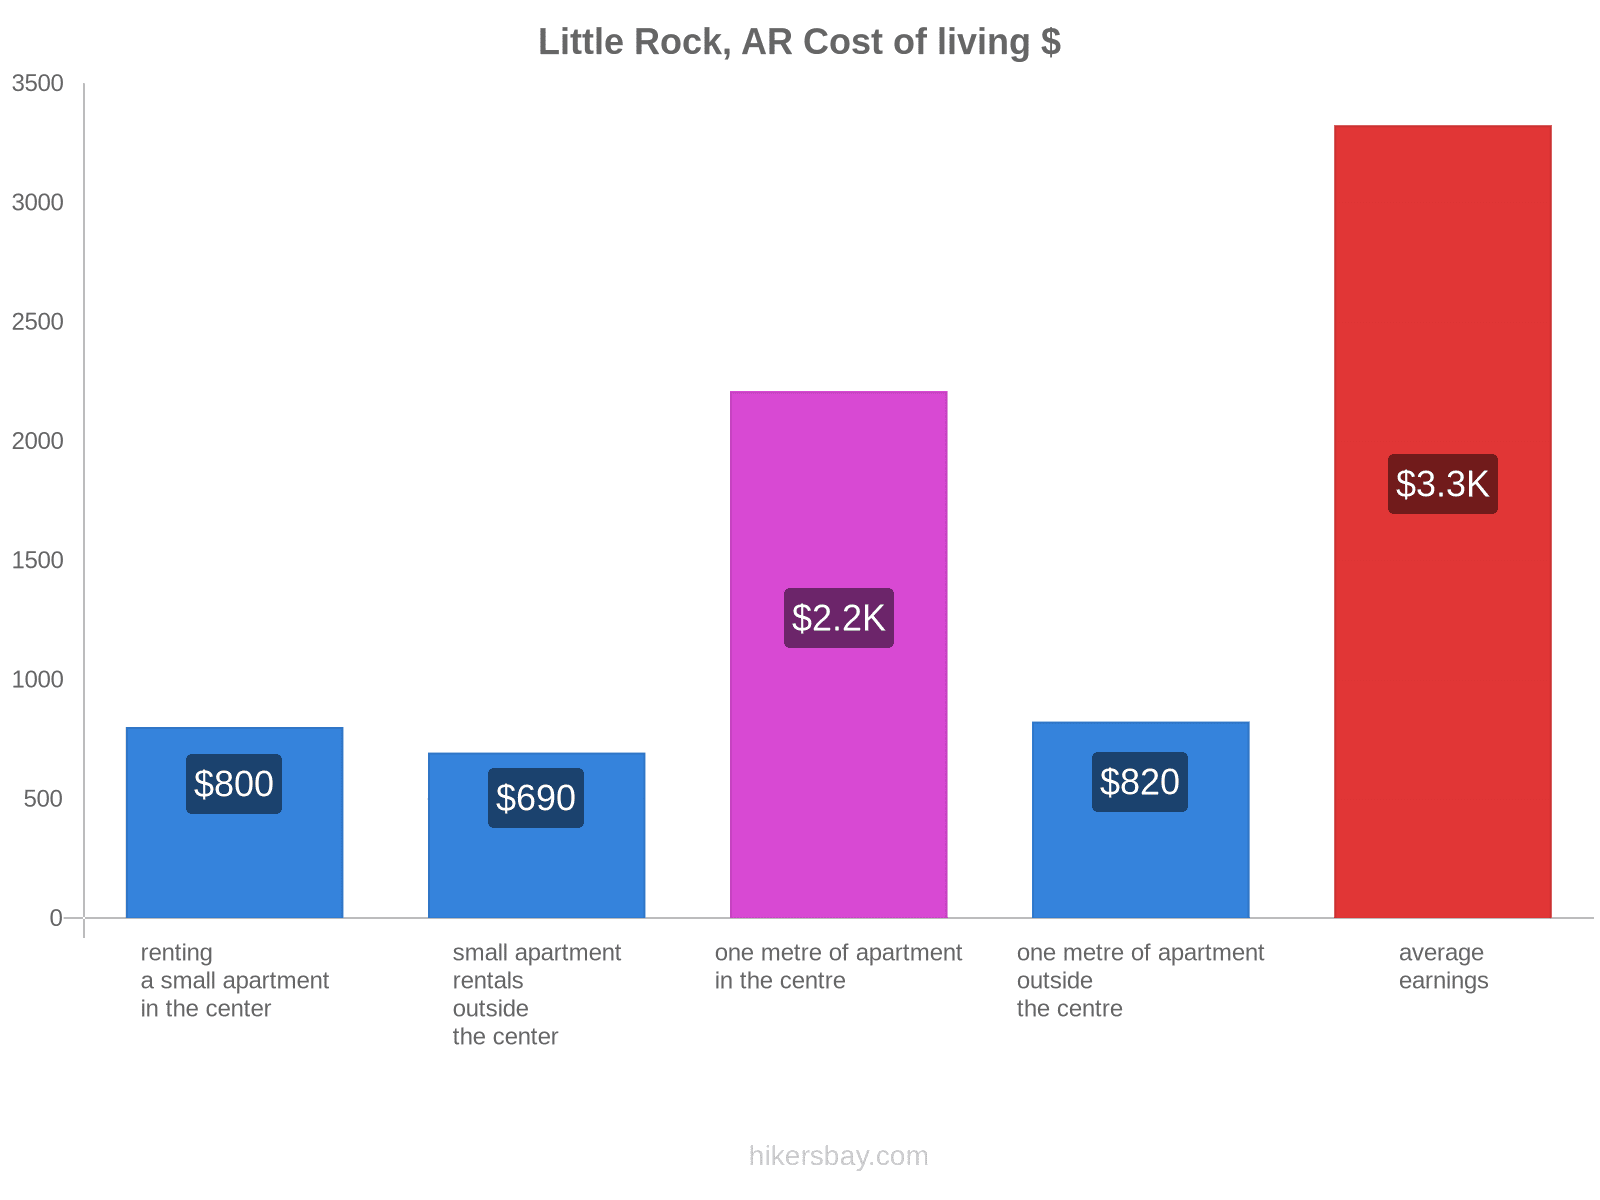 Little Rock, AR cost of living hikersbay.com